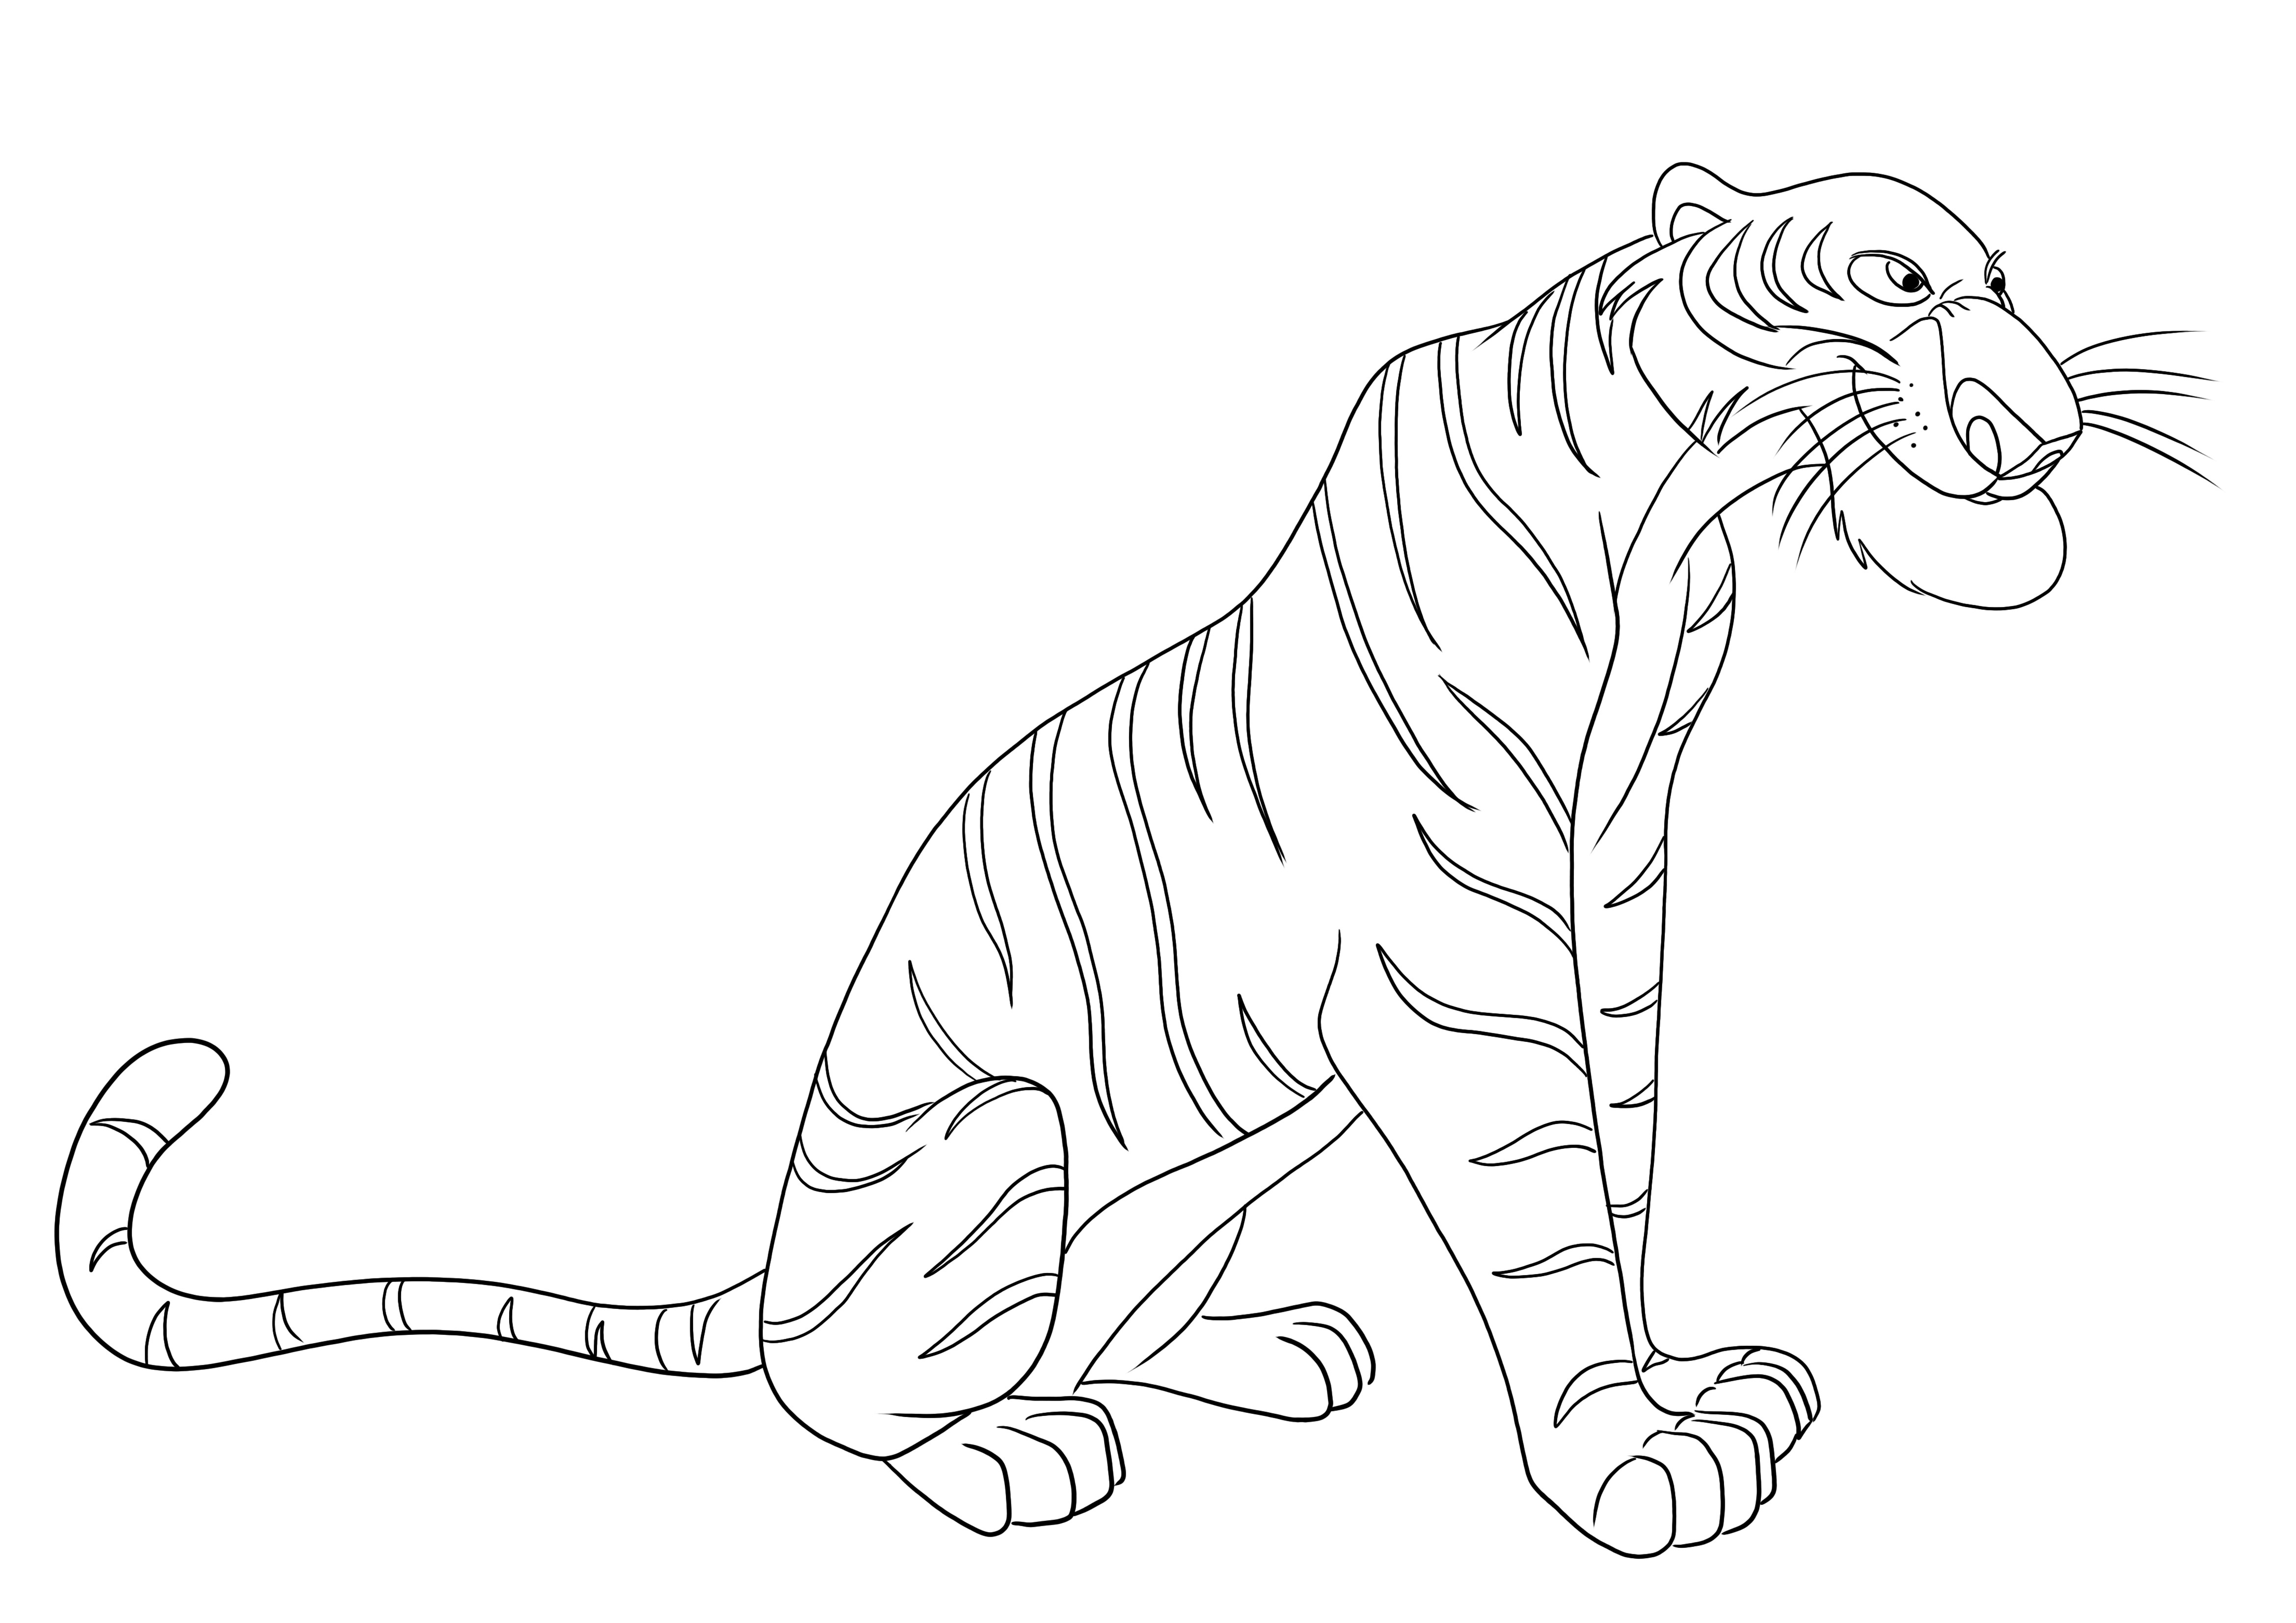 Kolorowanka Shere Khan Tygrys z Księgi Dżungli do pobrania za darmo